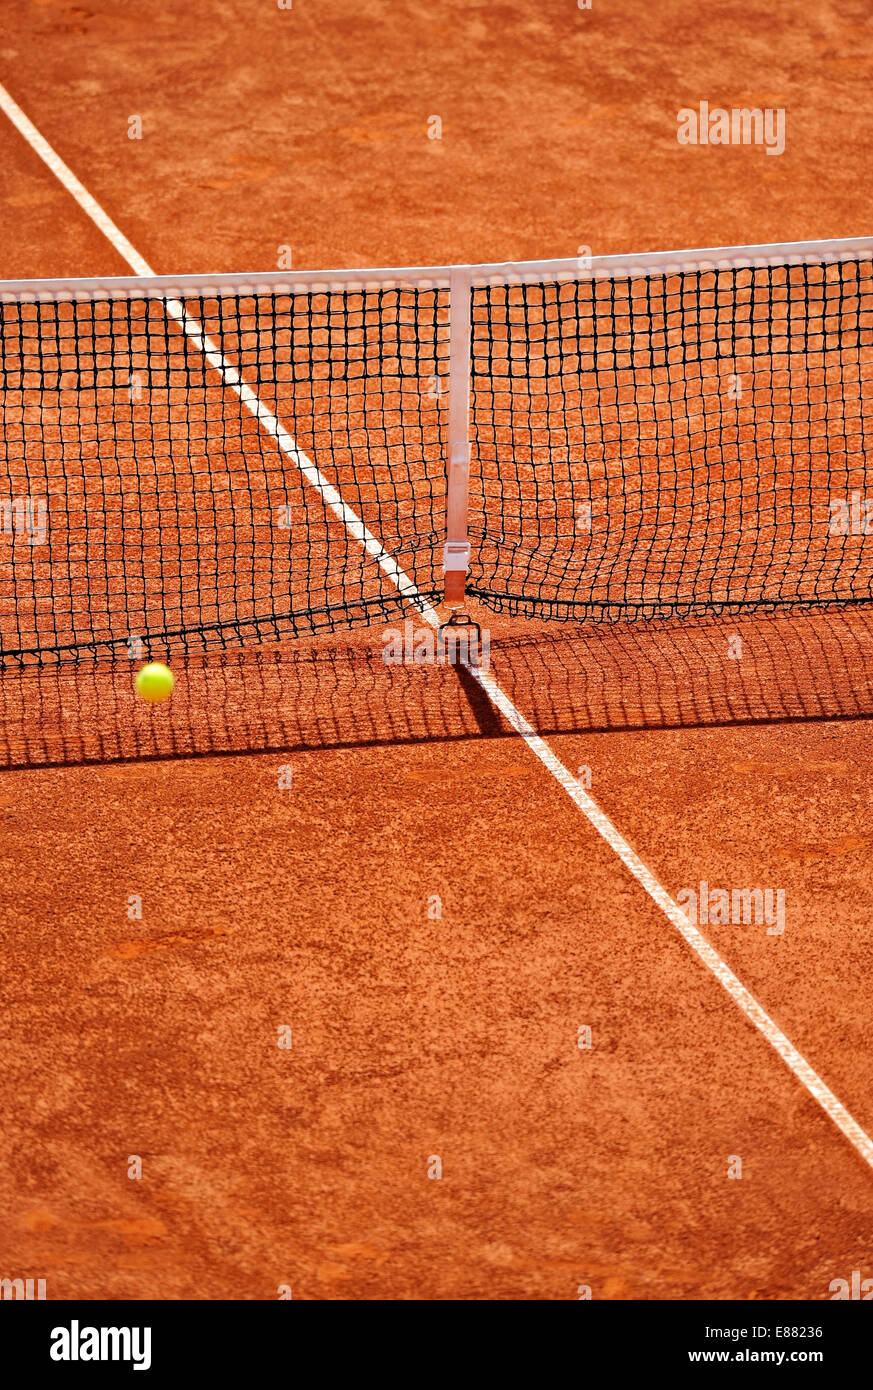 Détail sur un filet de tennis sur terre battue au cours d'un match Banque D'Images